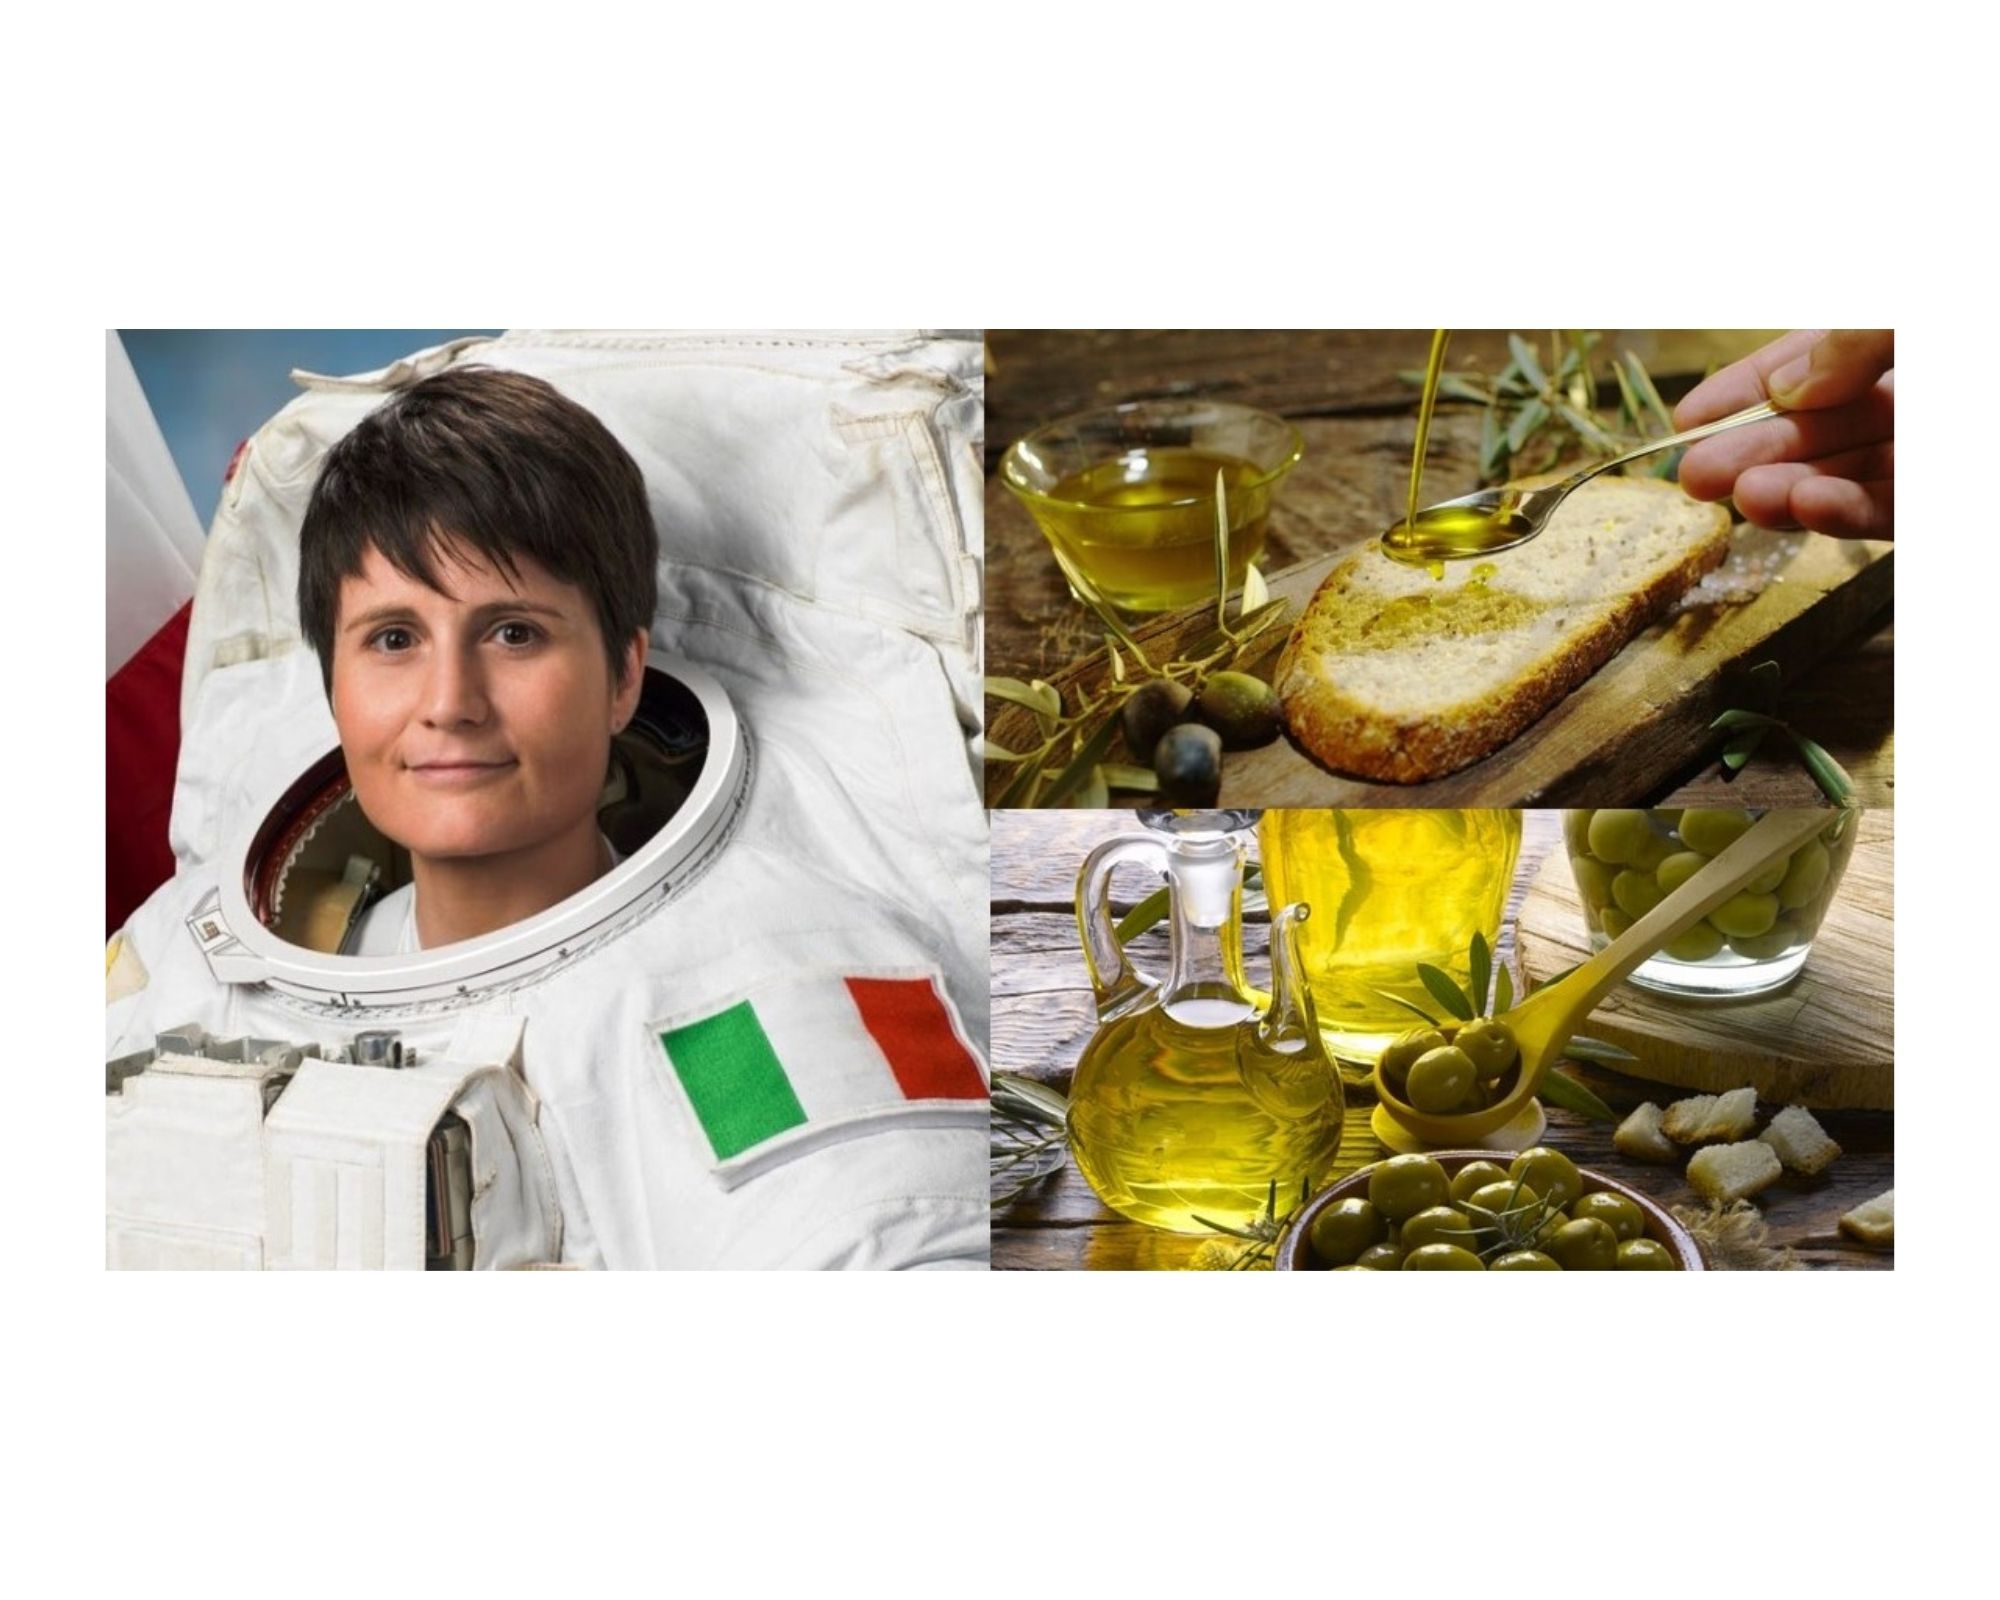 L’olio d’oliva extravergine italiano vola tra le stelle con Samantha Cristoforetti.